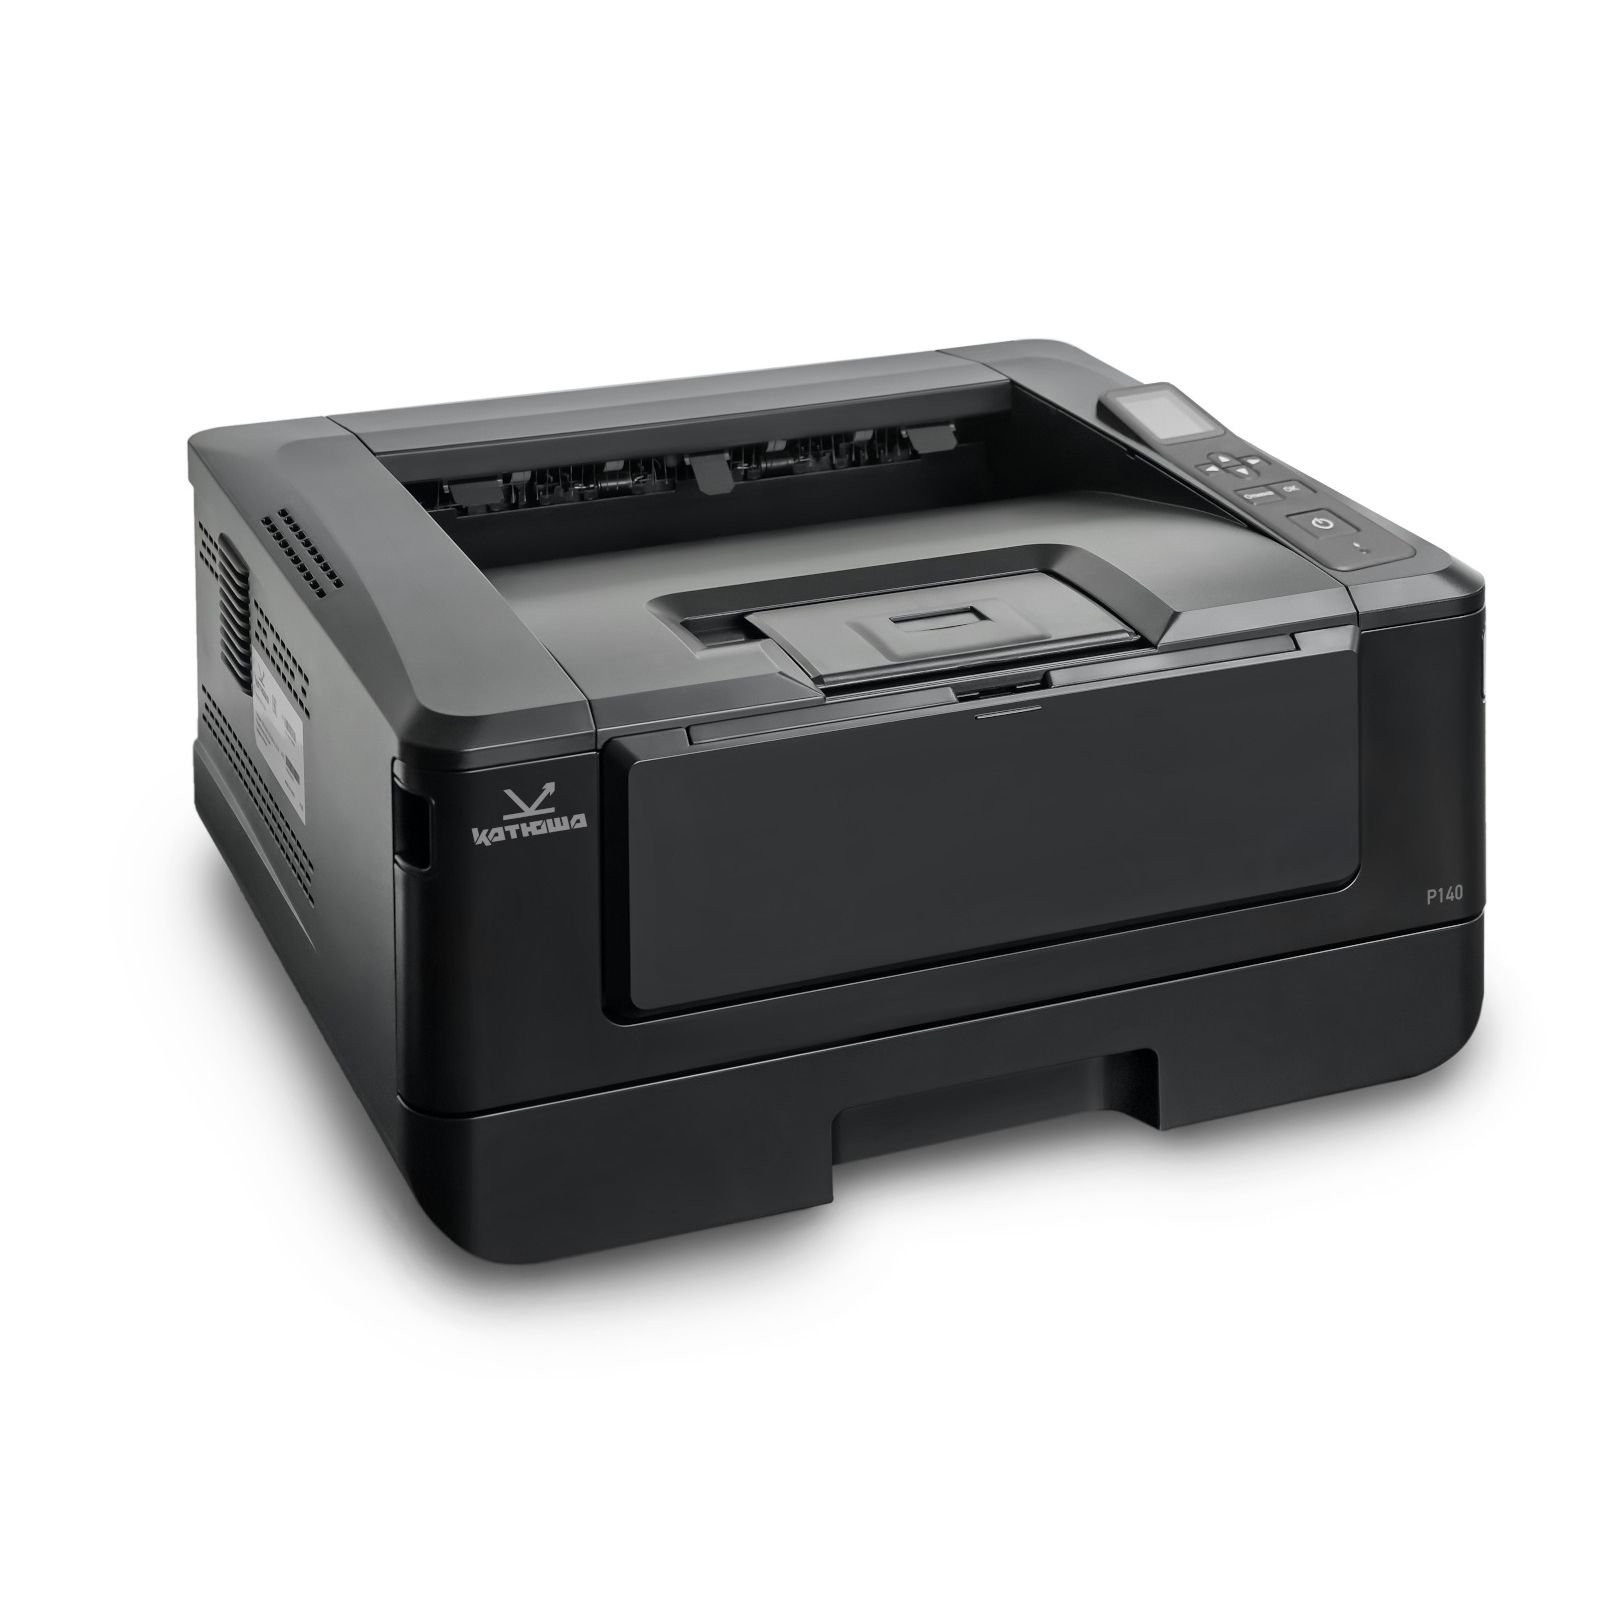 Принтер лазерный Катюша P140, черно-белая печать, 40 стр/мин, 1200 dpi, 1 ГБ RAM, USB, Ethernet